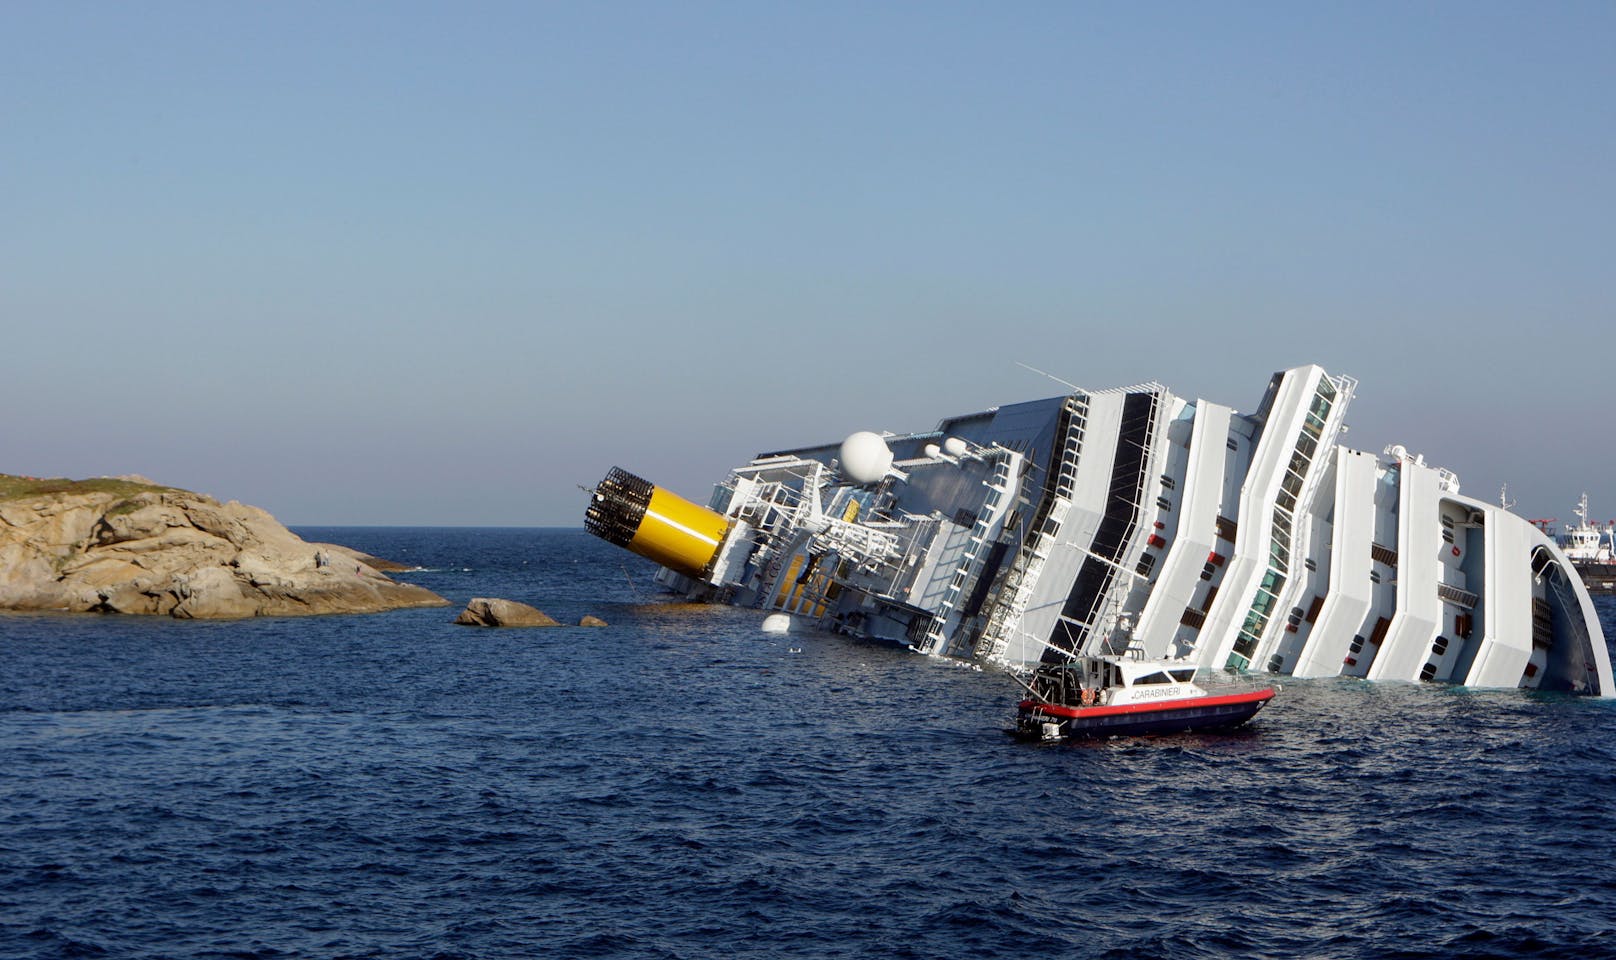 Am 13. Jänner 2012 läuft die Costa Concordia auf Grund. 32 Menschen sterben.